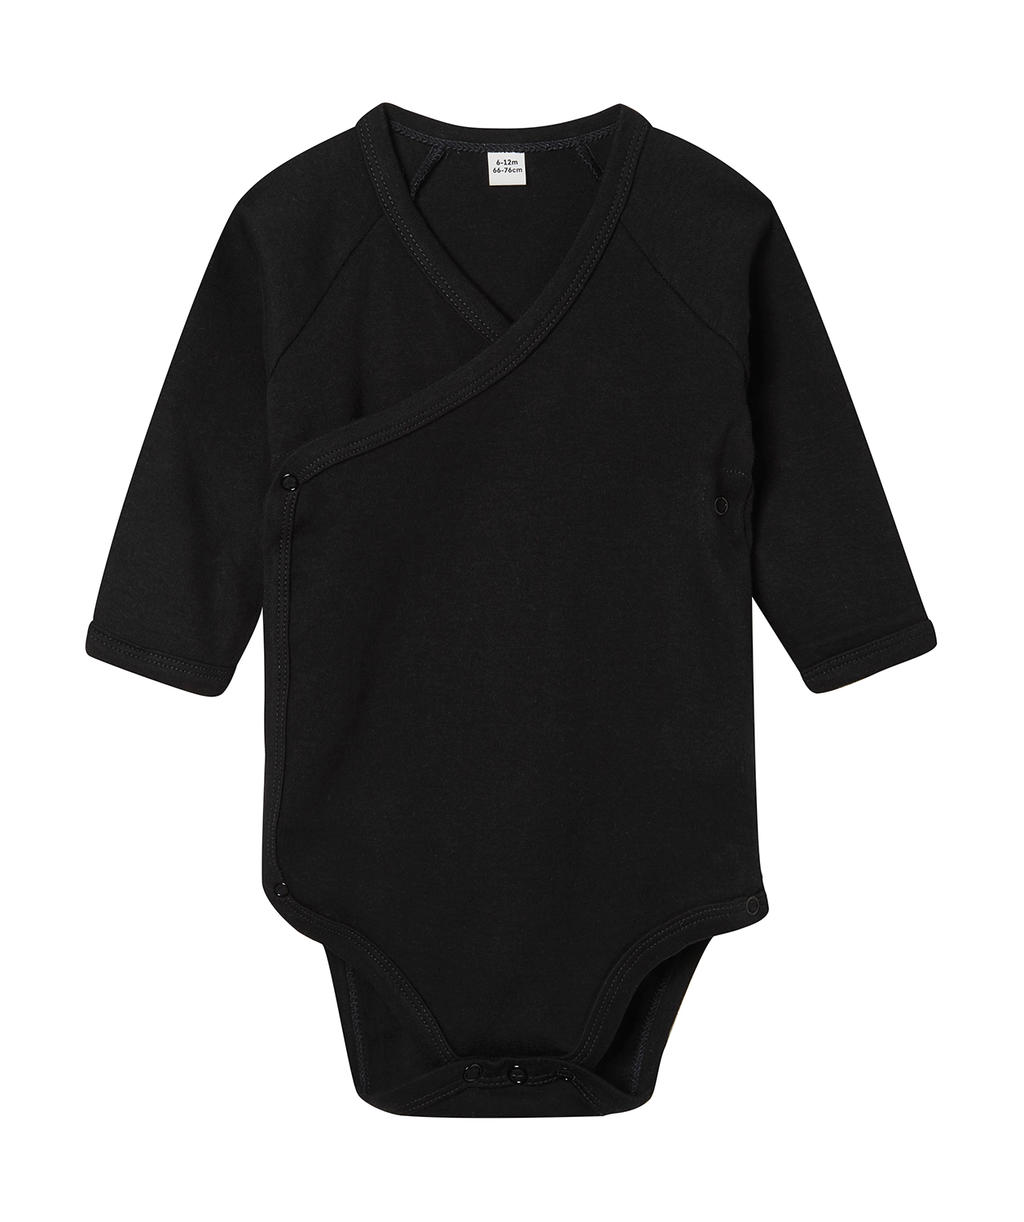  Baby Long Sleeve Kimono Bodysuit in Farbe Black